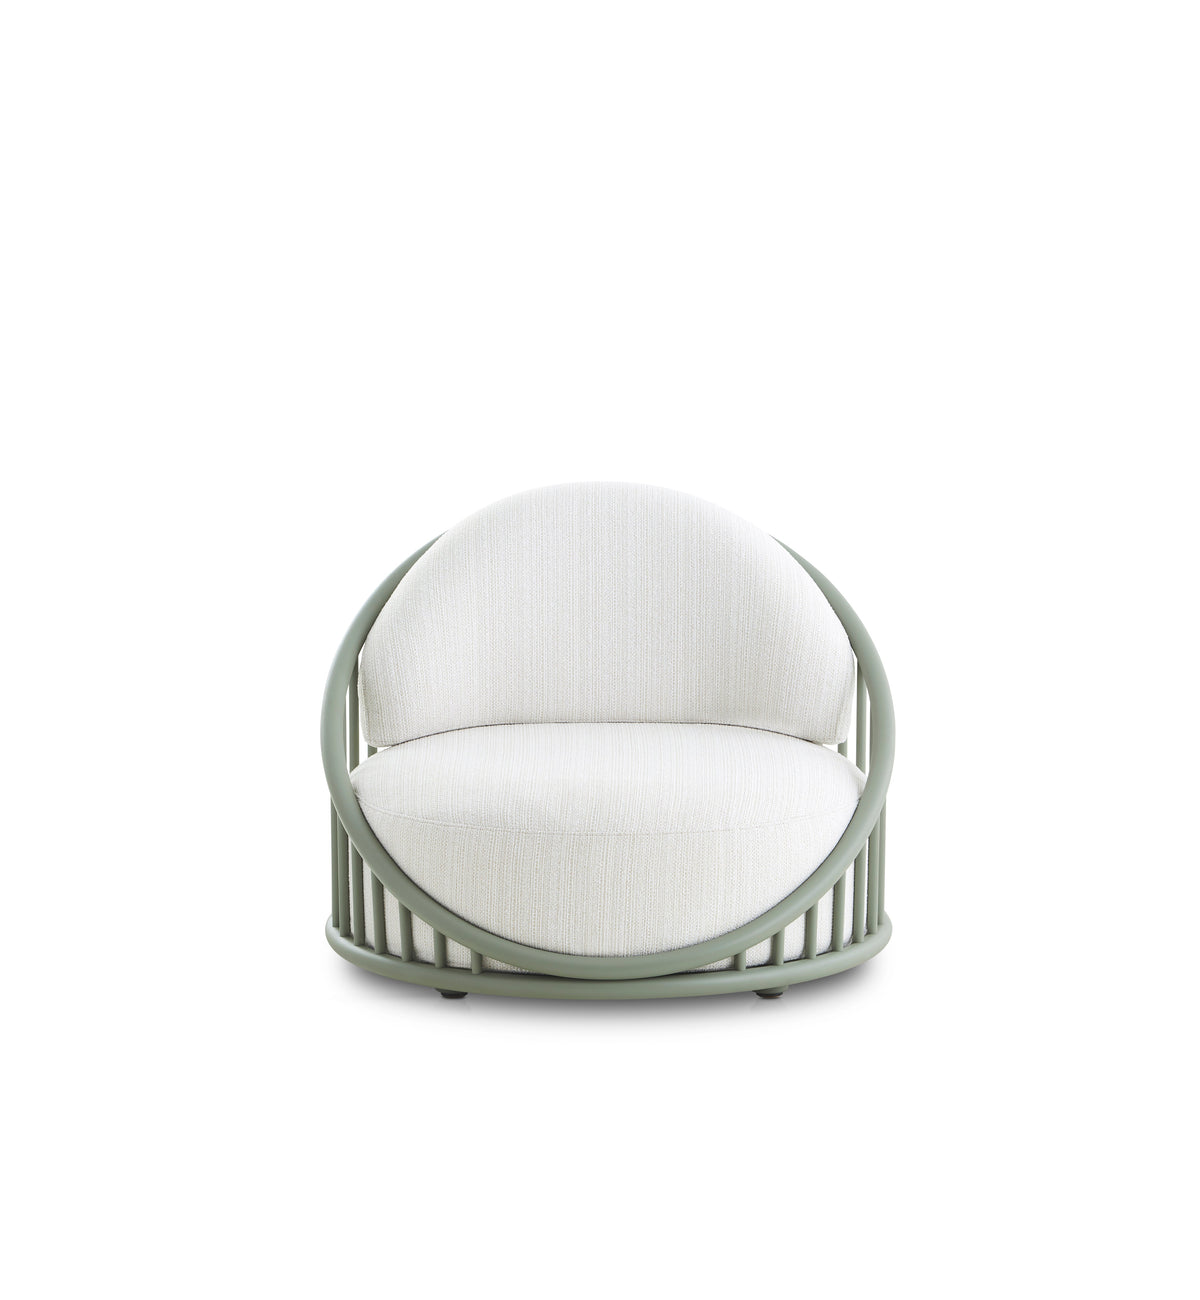 Cask Outdoor Armchair-Expormim-Contract Furniture Store